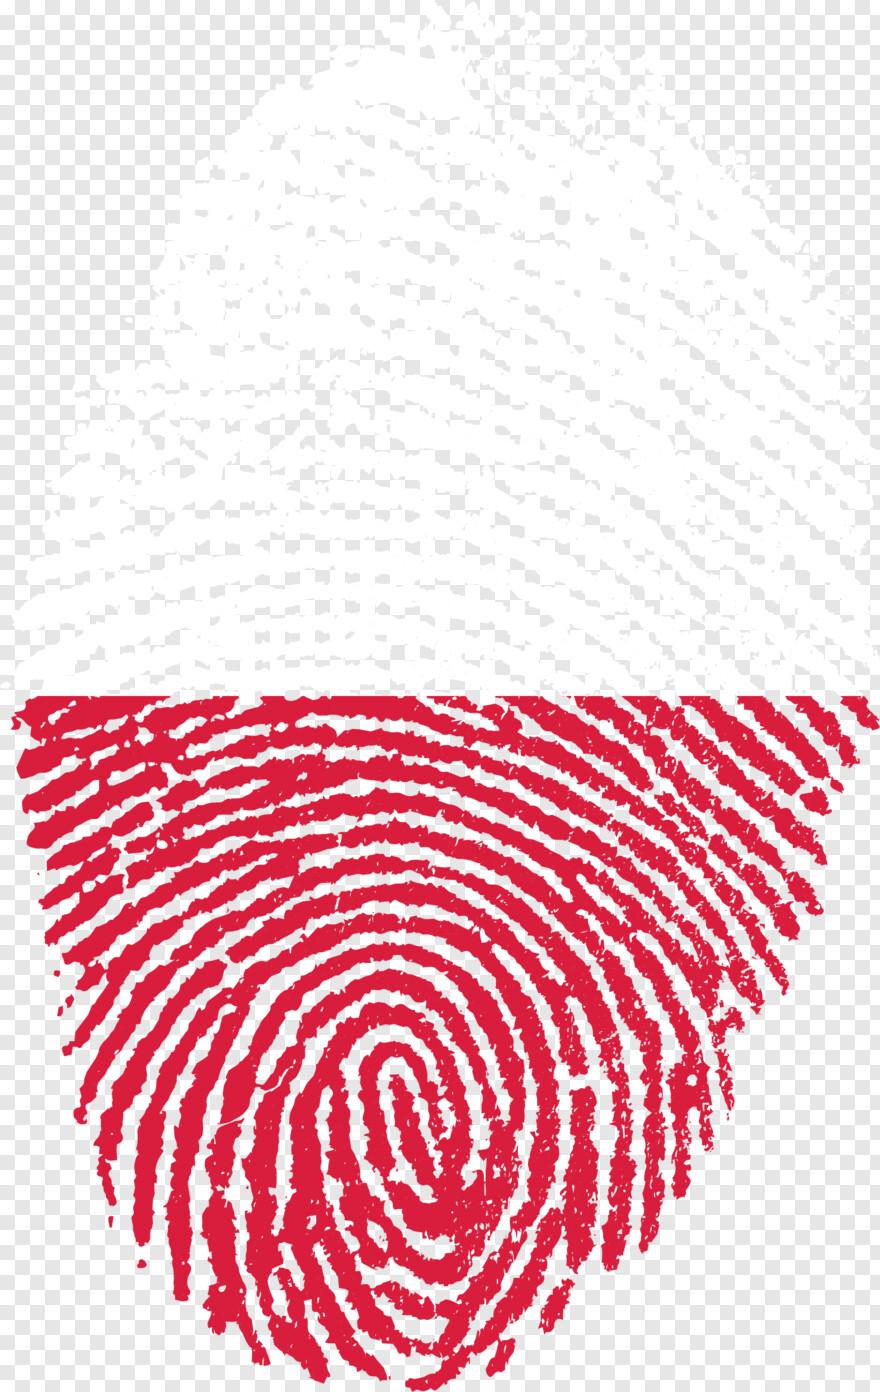 fingerprint-icon # 952295